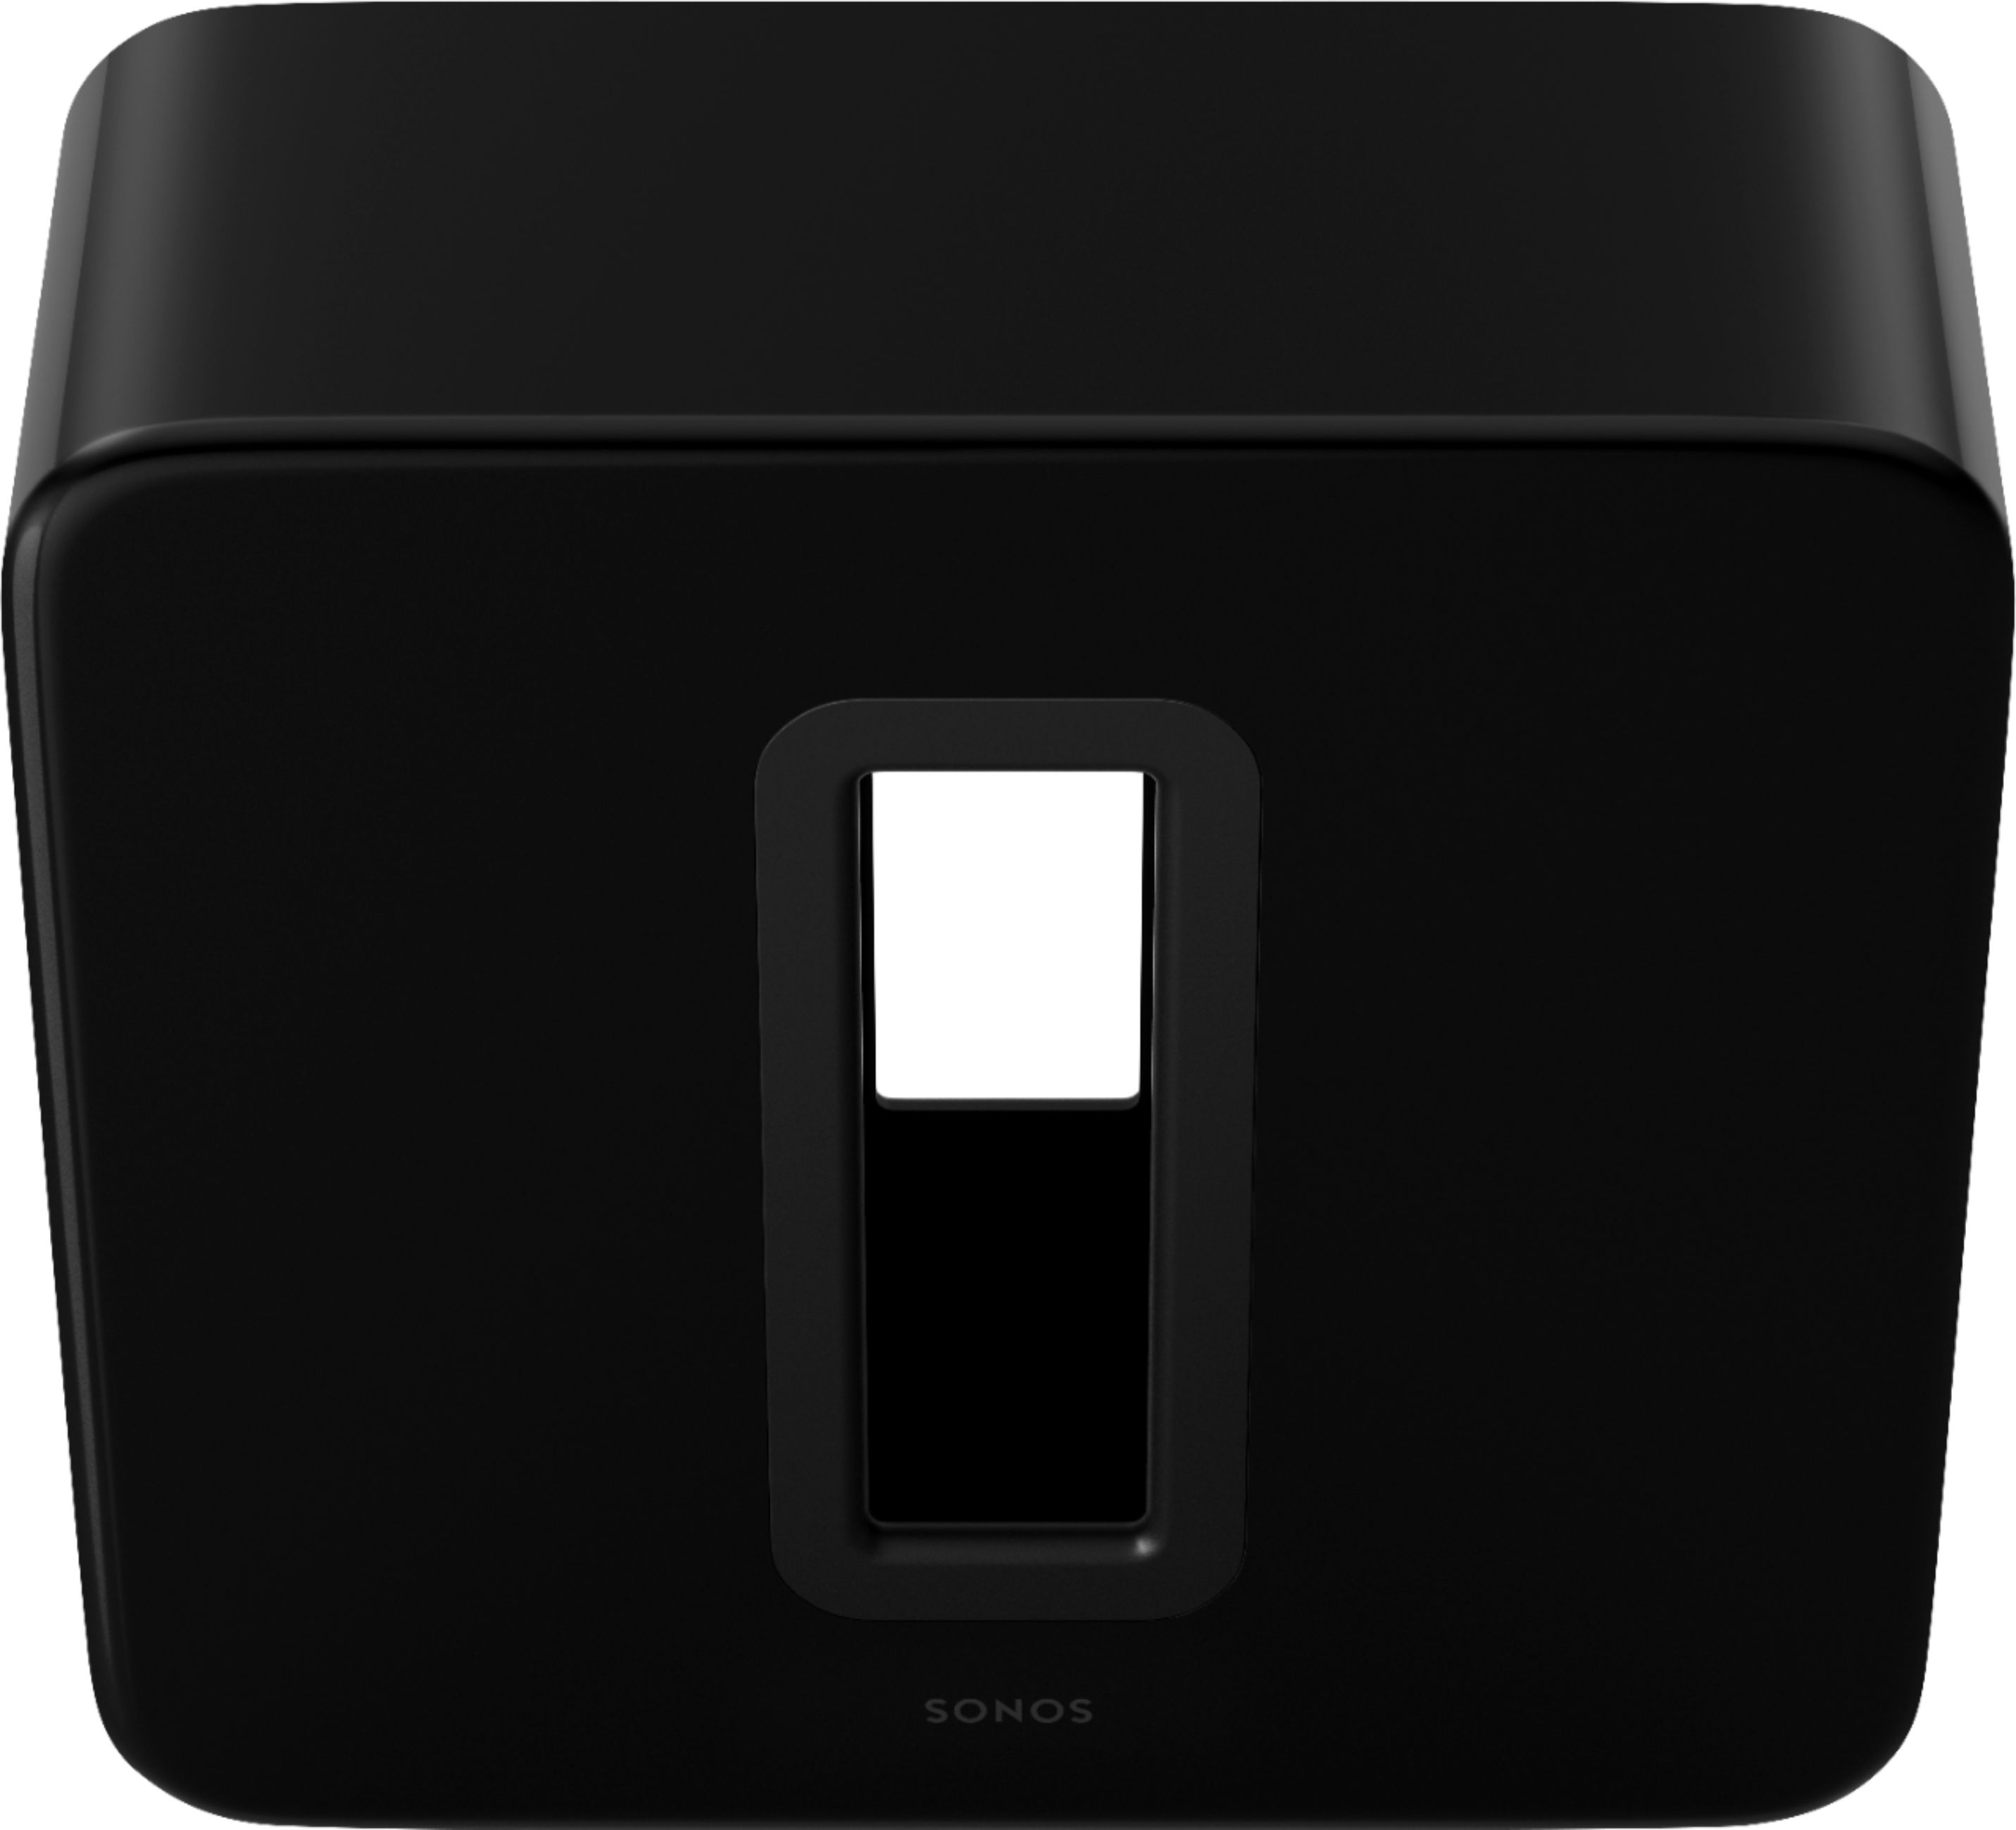 (GEN3) - SUB Wireless Black (Gen (BLACK) Sonos Best SONOS US Buy Sub 3) Subwoofer